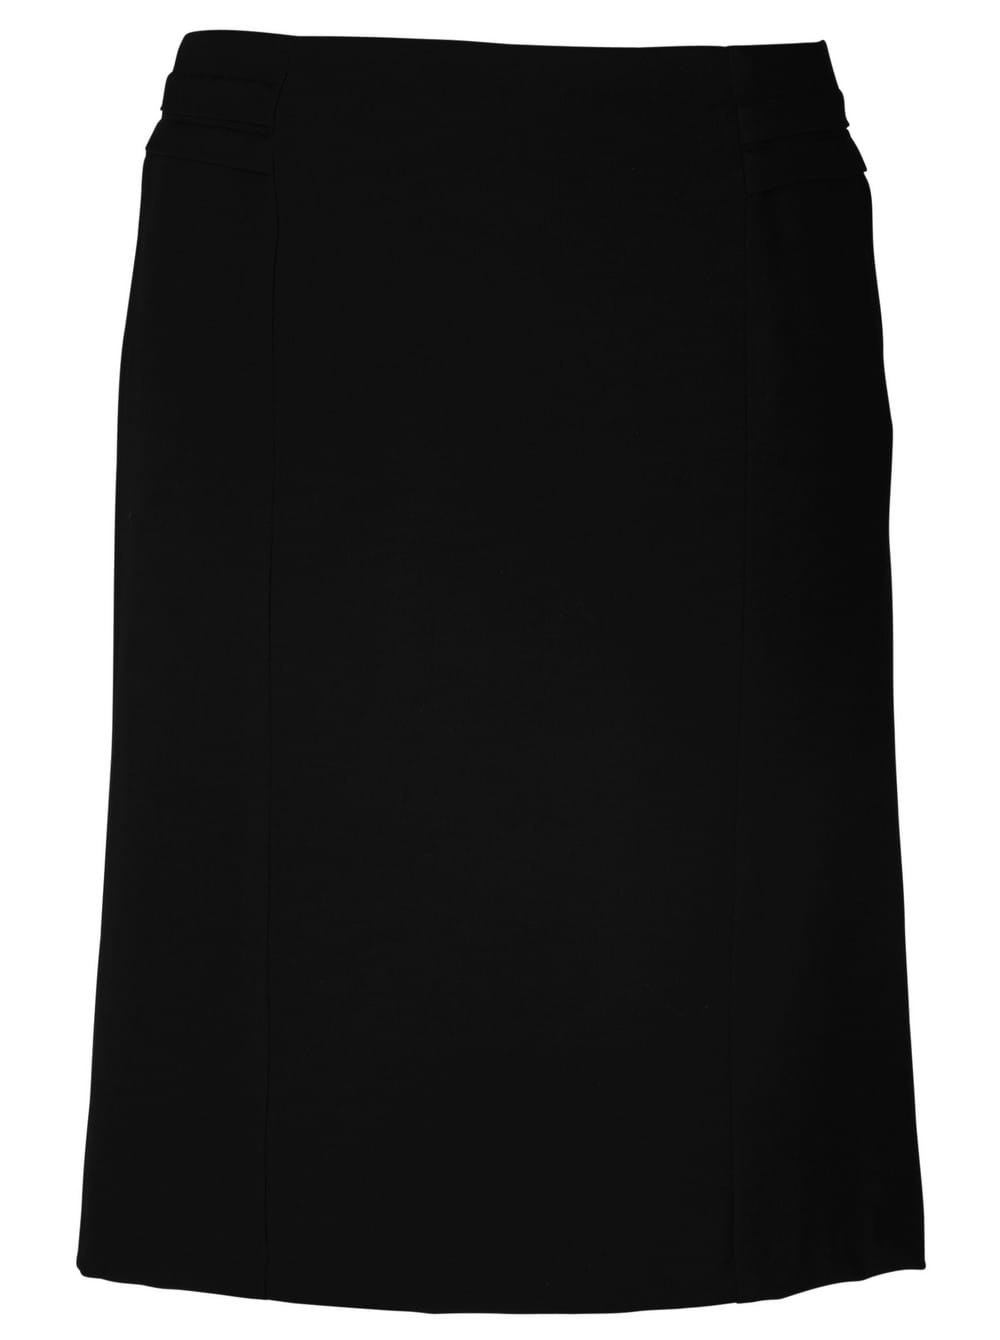 Sonya 599 Pencil Skirt - Black / 28 - Knee-Length Skirts